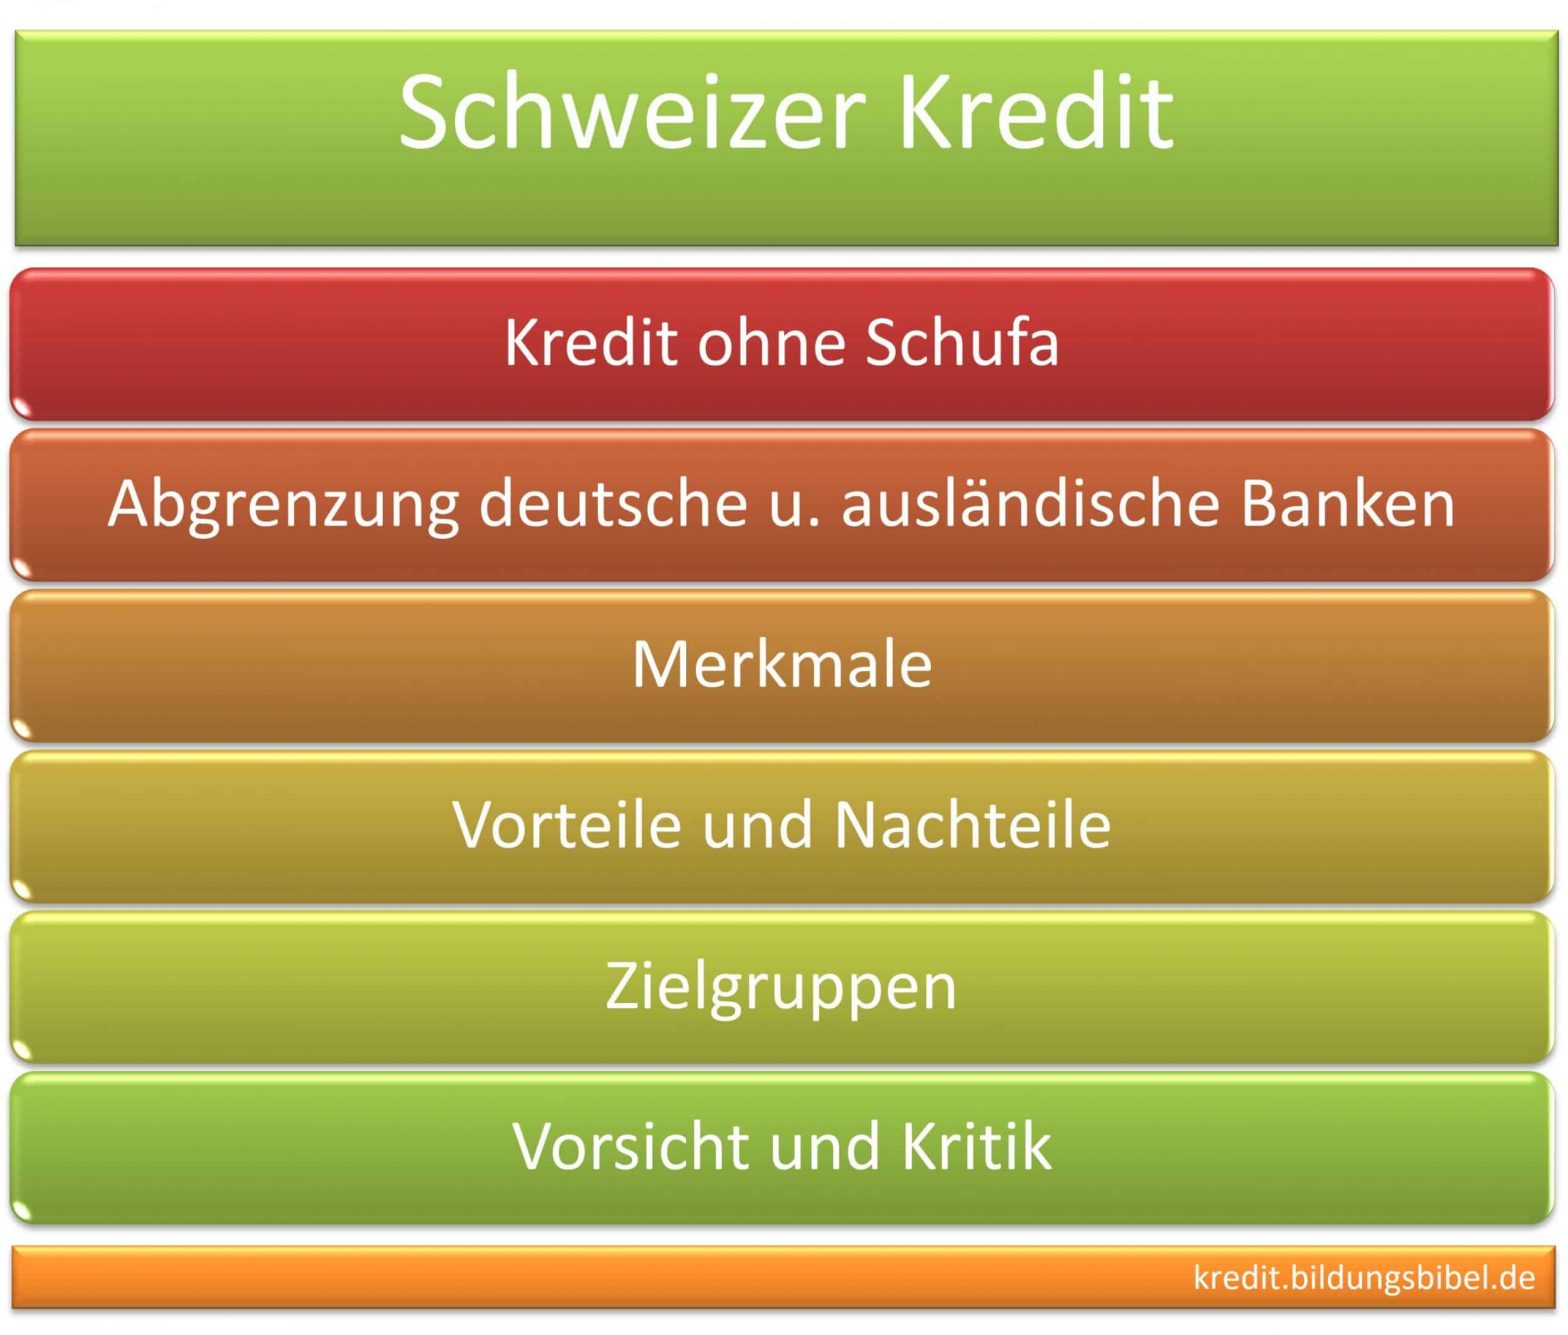 Schweizer Kredit ohne Schufa, Abgrenzung deutsche u. ausländische Banken, Merkmale, Vorteile, Nachteile sowie Zielgruppe, Vorsicht u. Kritik.